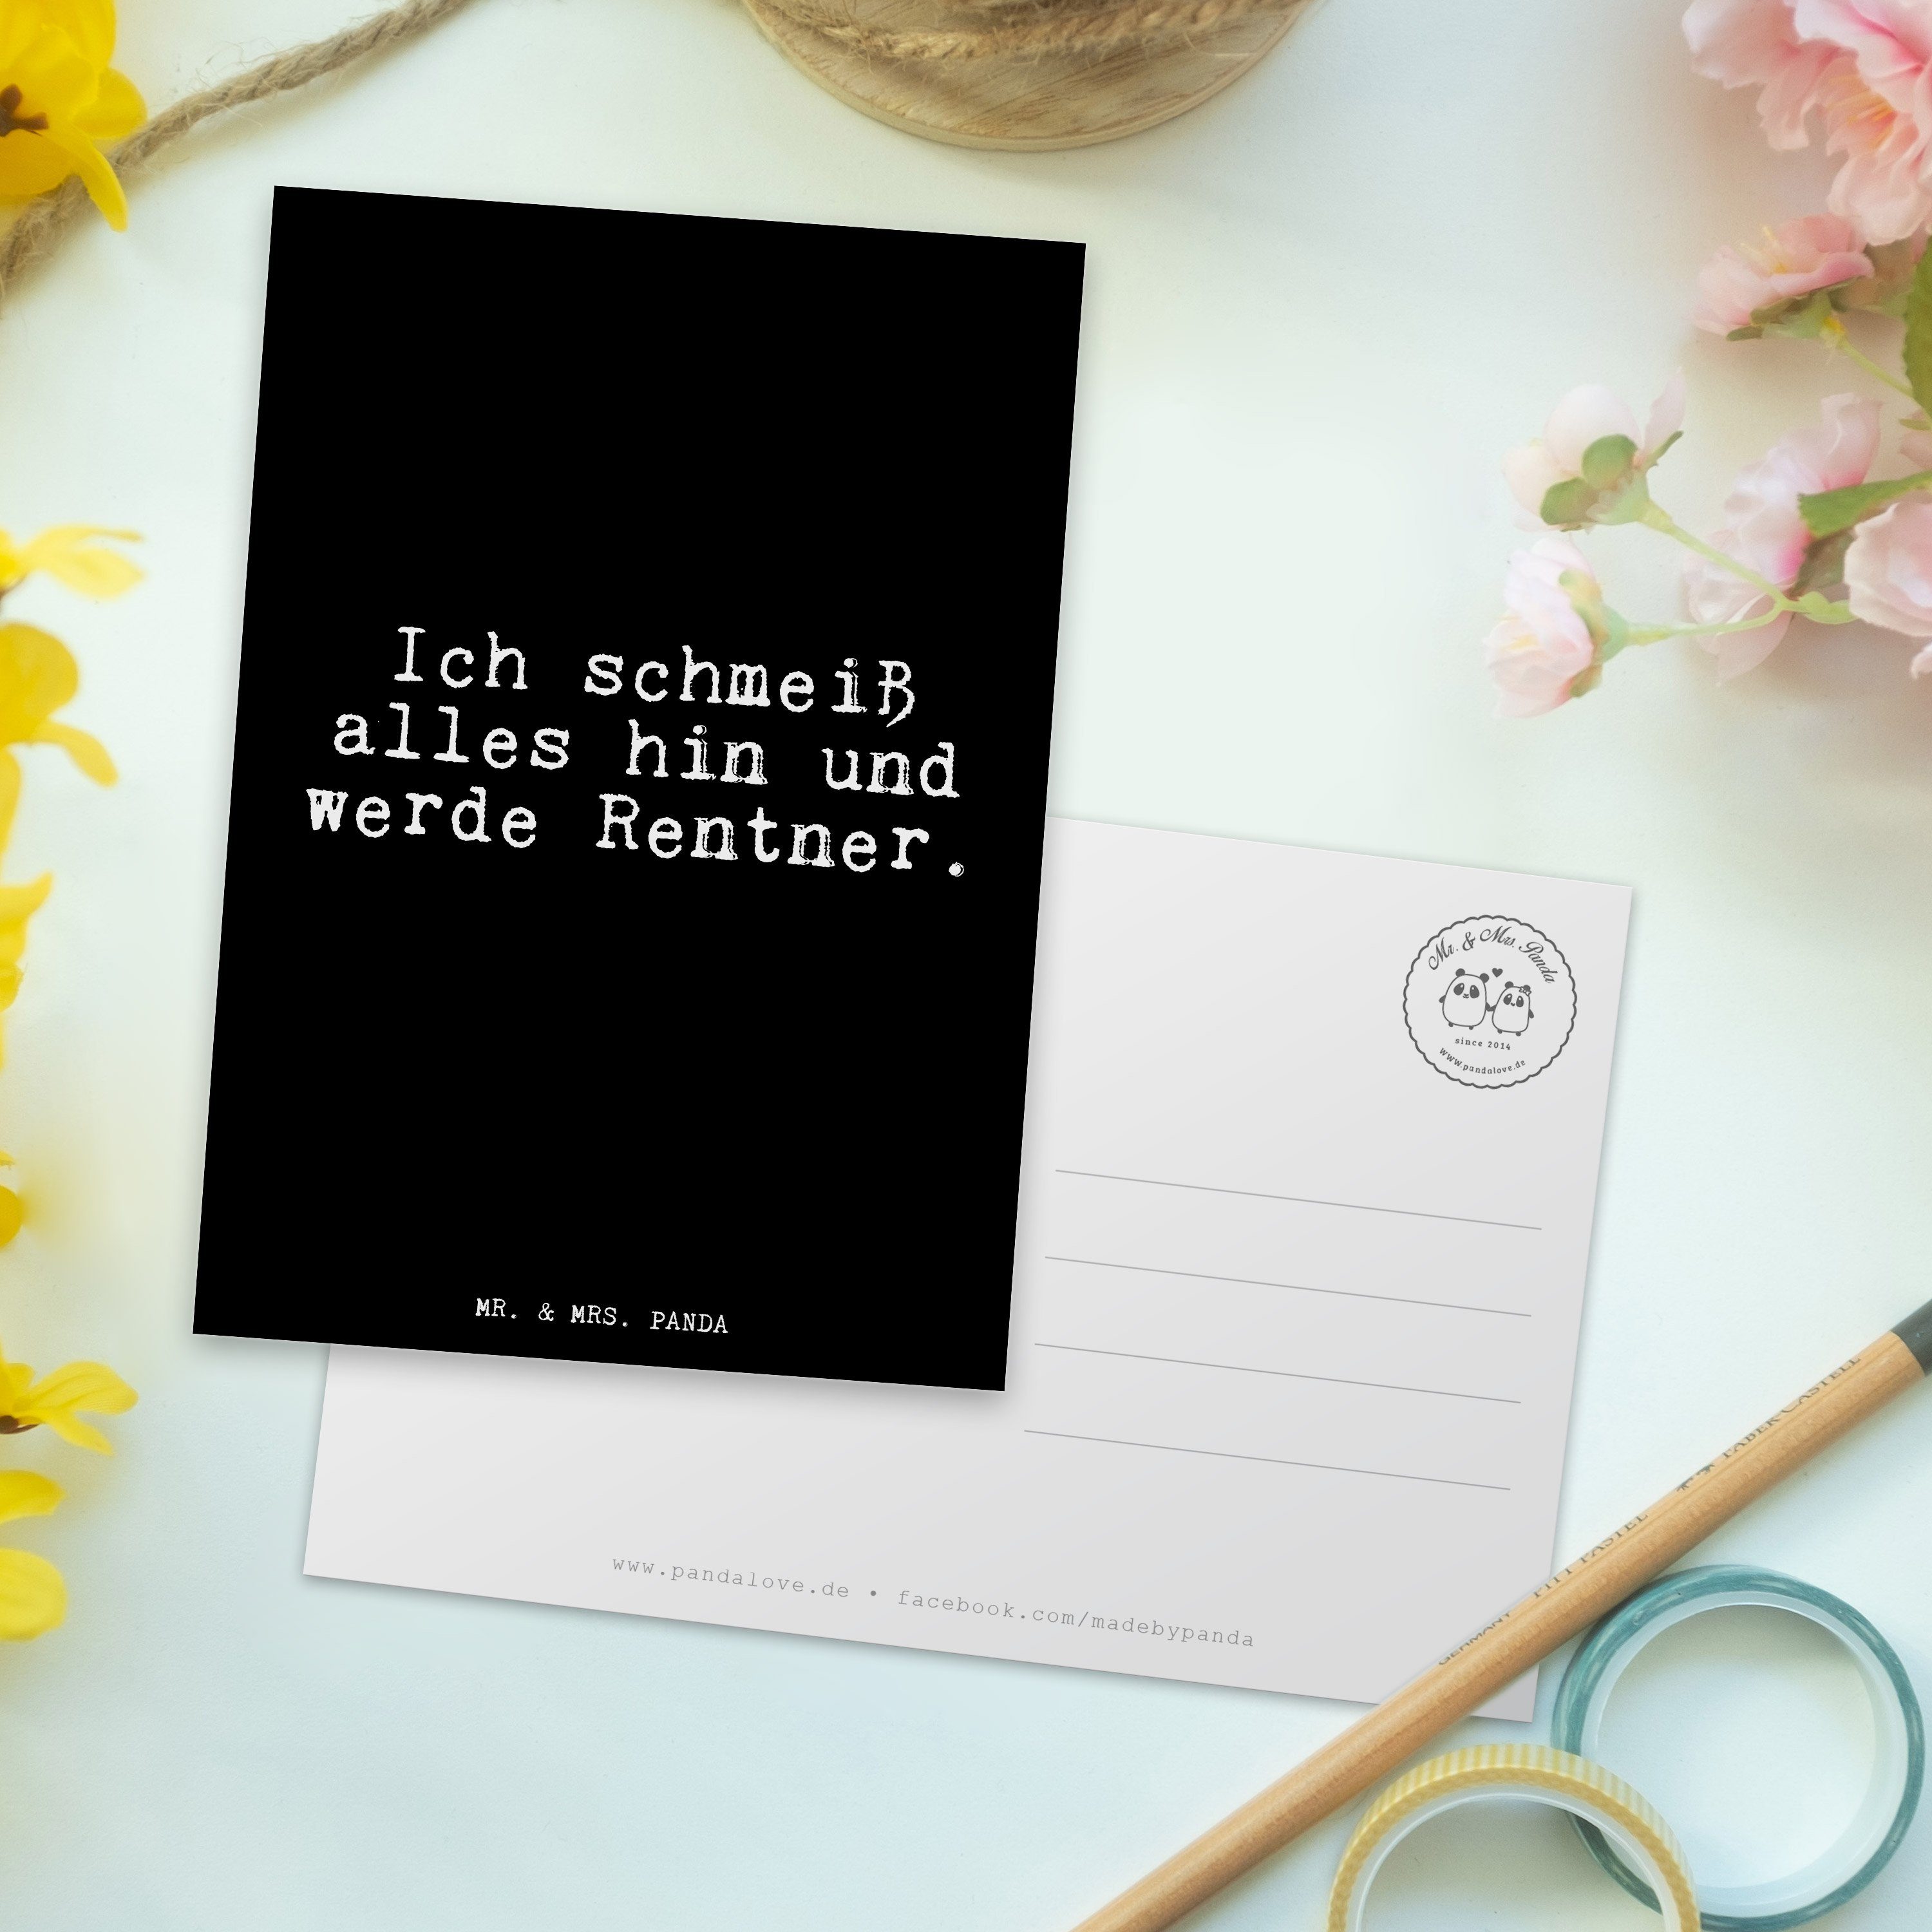 Rentnerin, Mr. - Einladung Mrs. schmeiß Postkarte Geschenk, alles Schwarz Ich hin... & - Panda